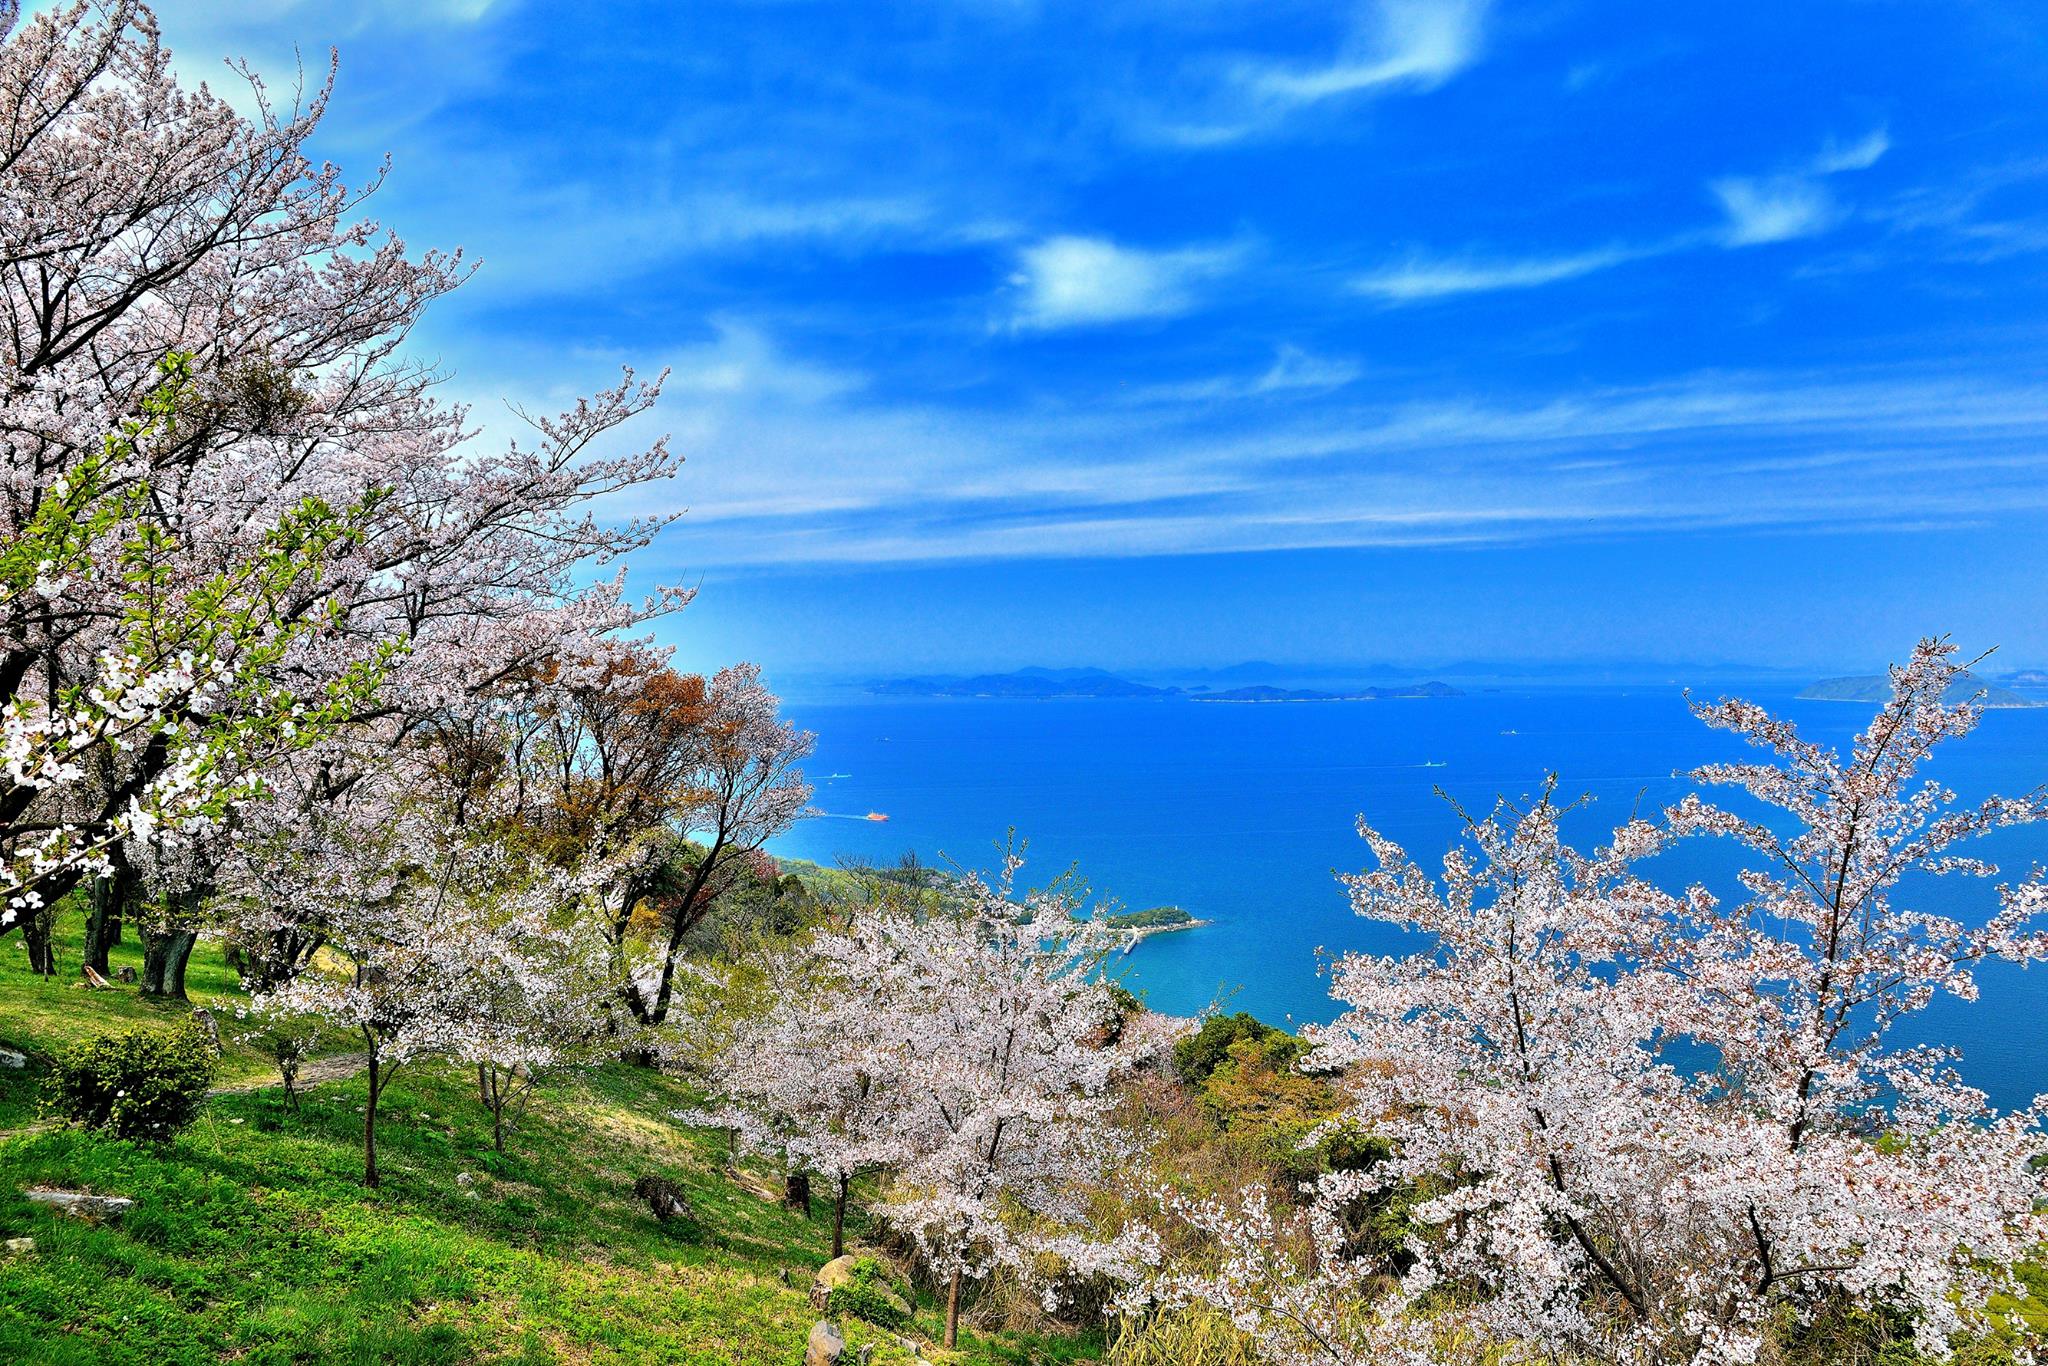 まるで桃源郷！香川の浦島太郎伝説の山、紫雲出山の見どころ6スポット